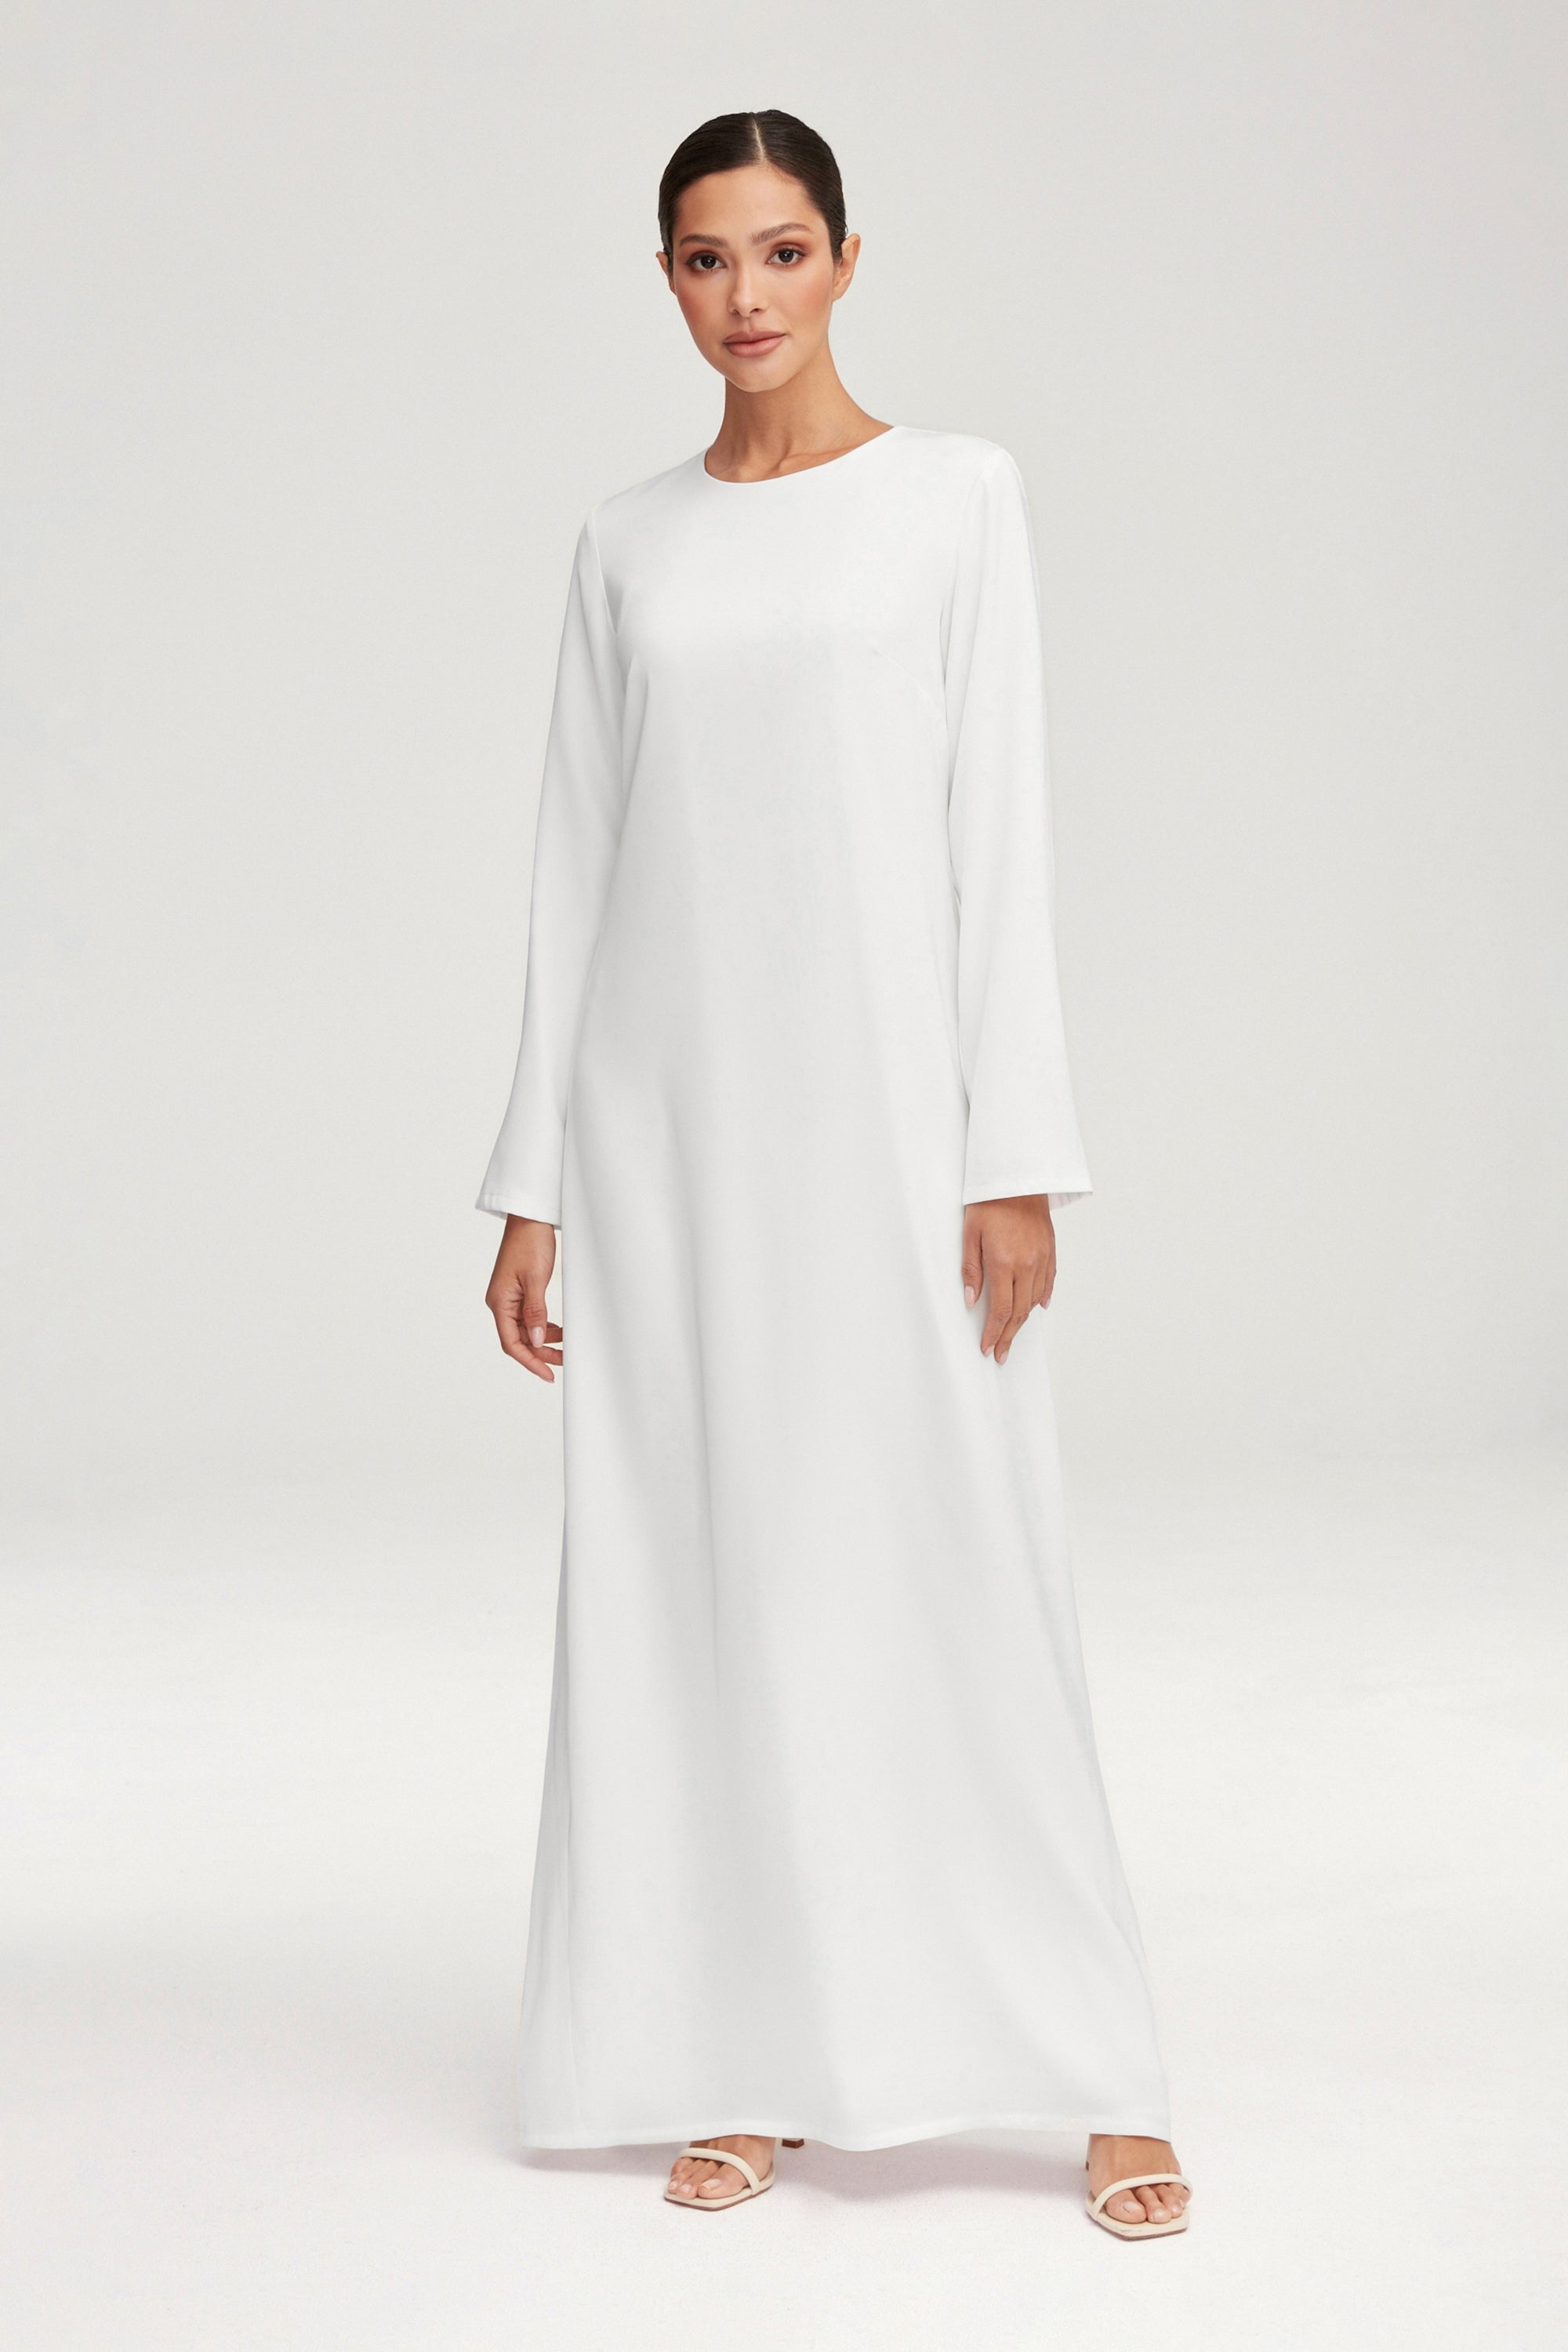 Essential Inner Slip Satin Maxi Dress - White Clothing epschoolboard 